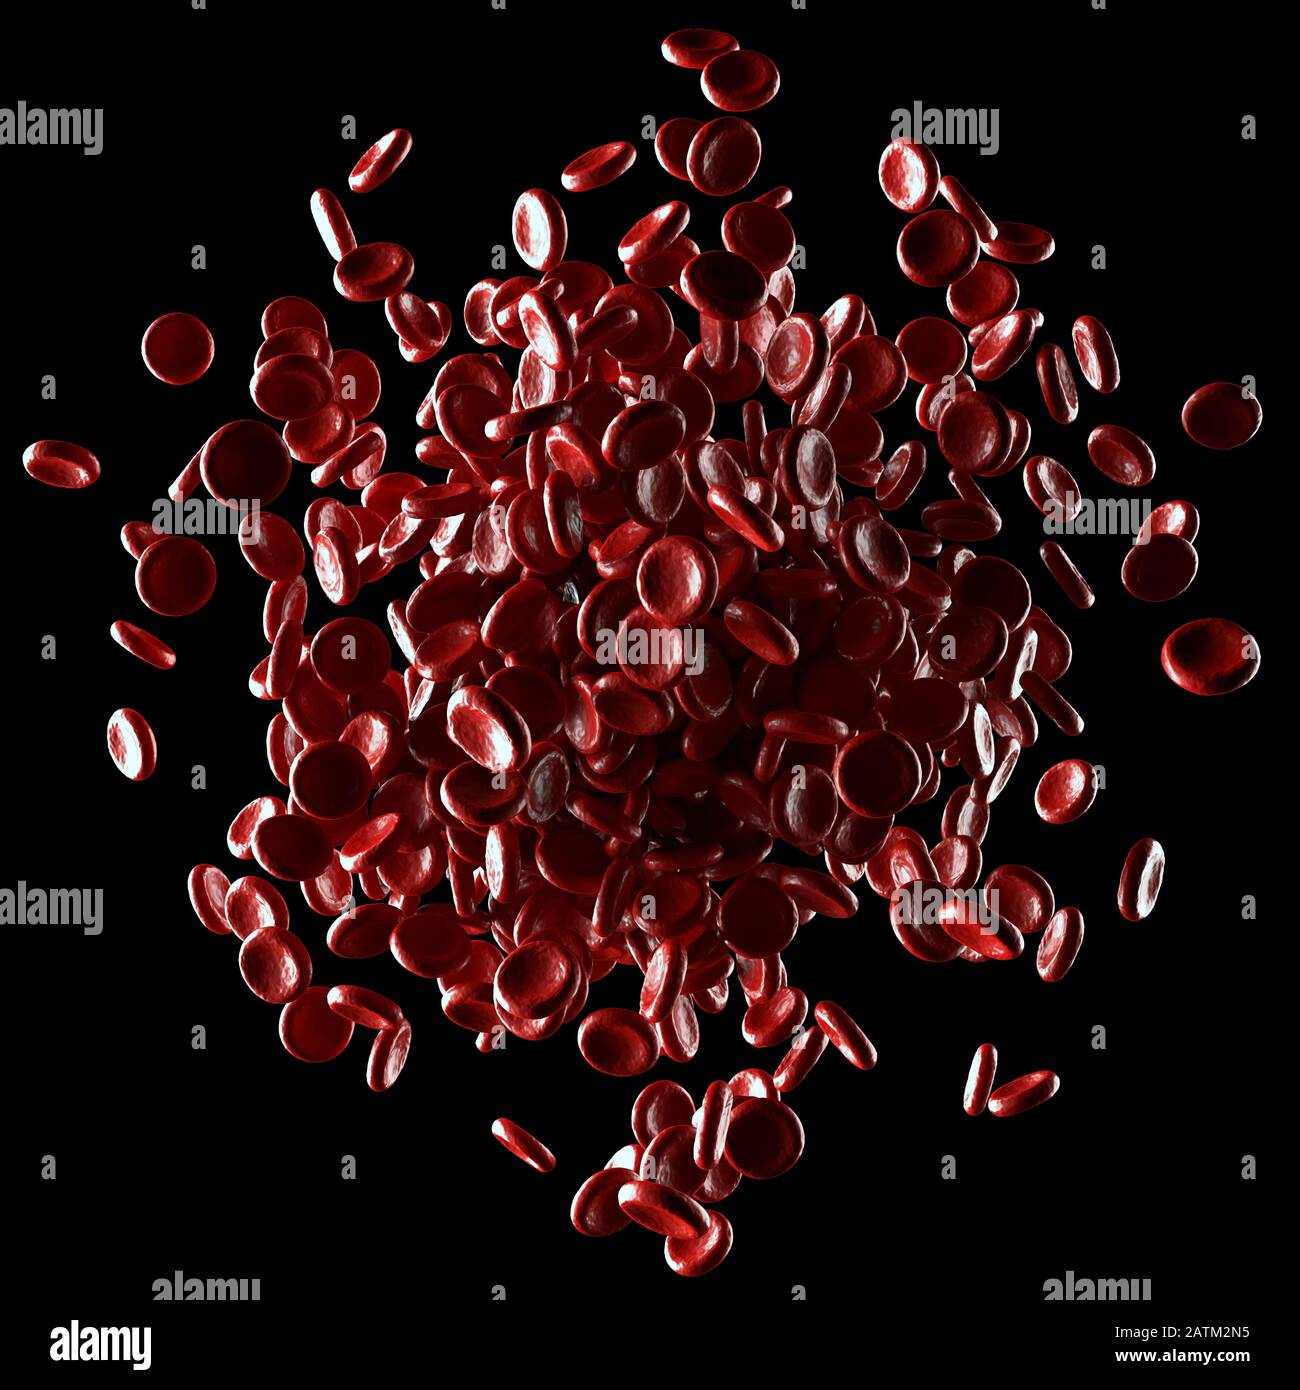 Los glóbulos rojos se derraman sobre fondo negro. Ilustración 3D, imagen conceptual. Trazado de recorte incluido. Foto de stock